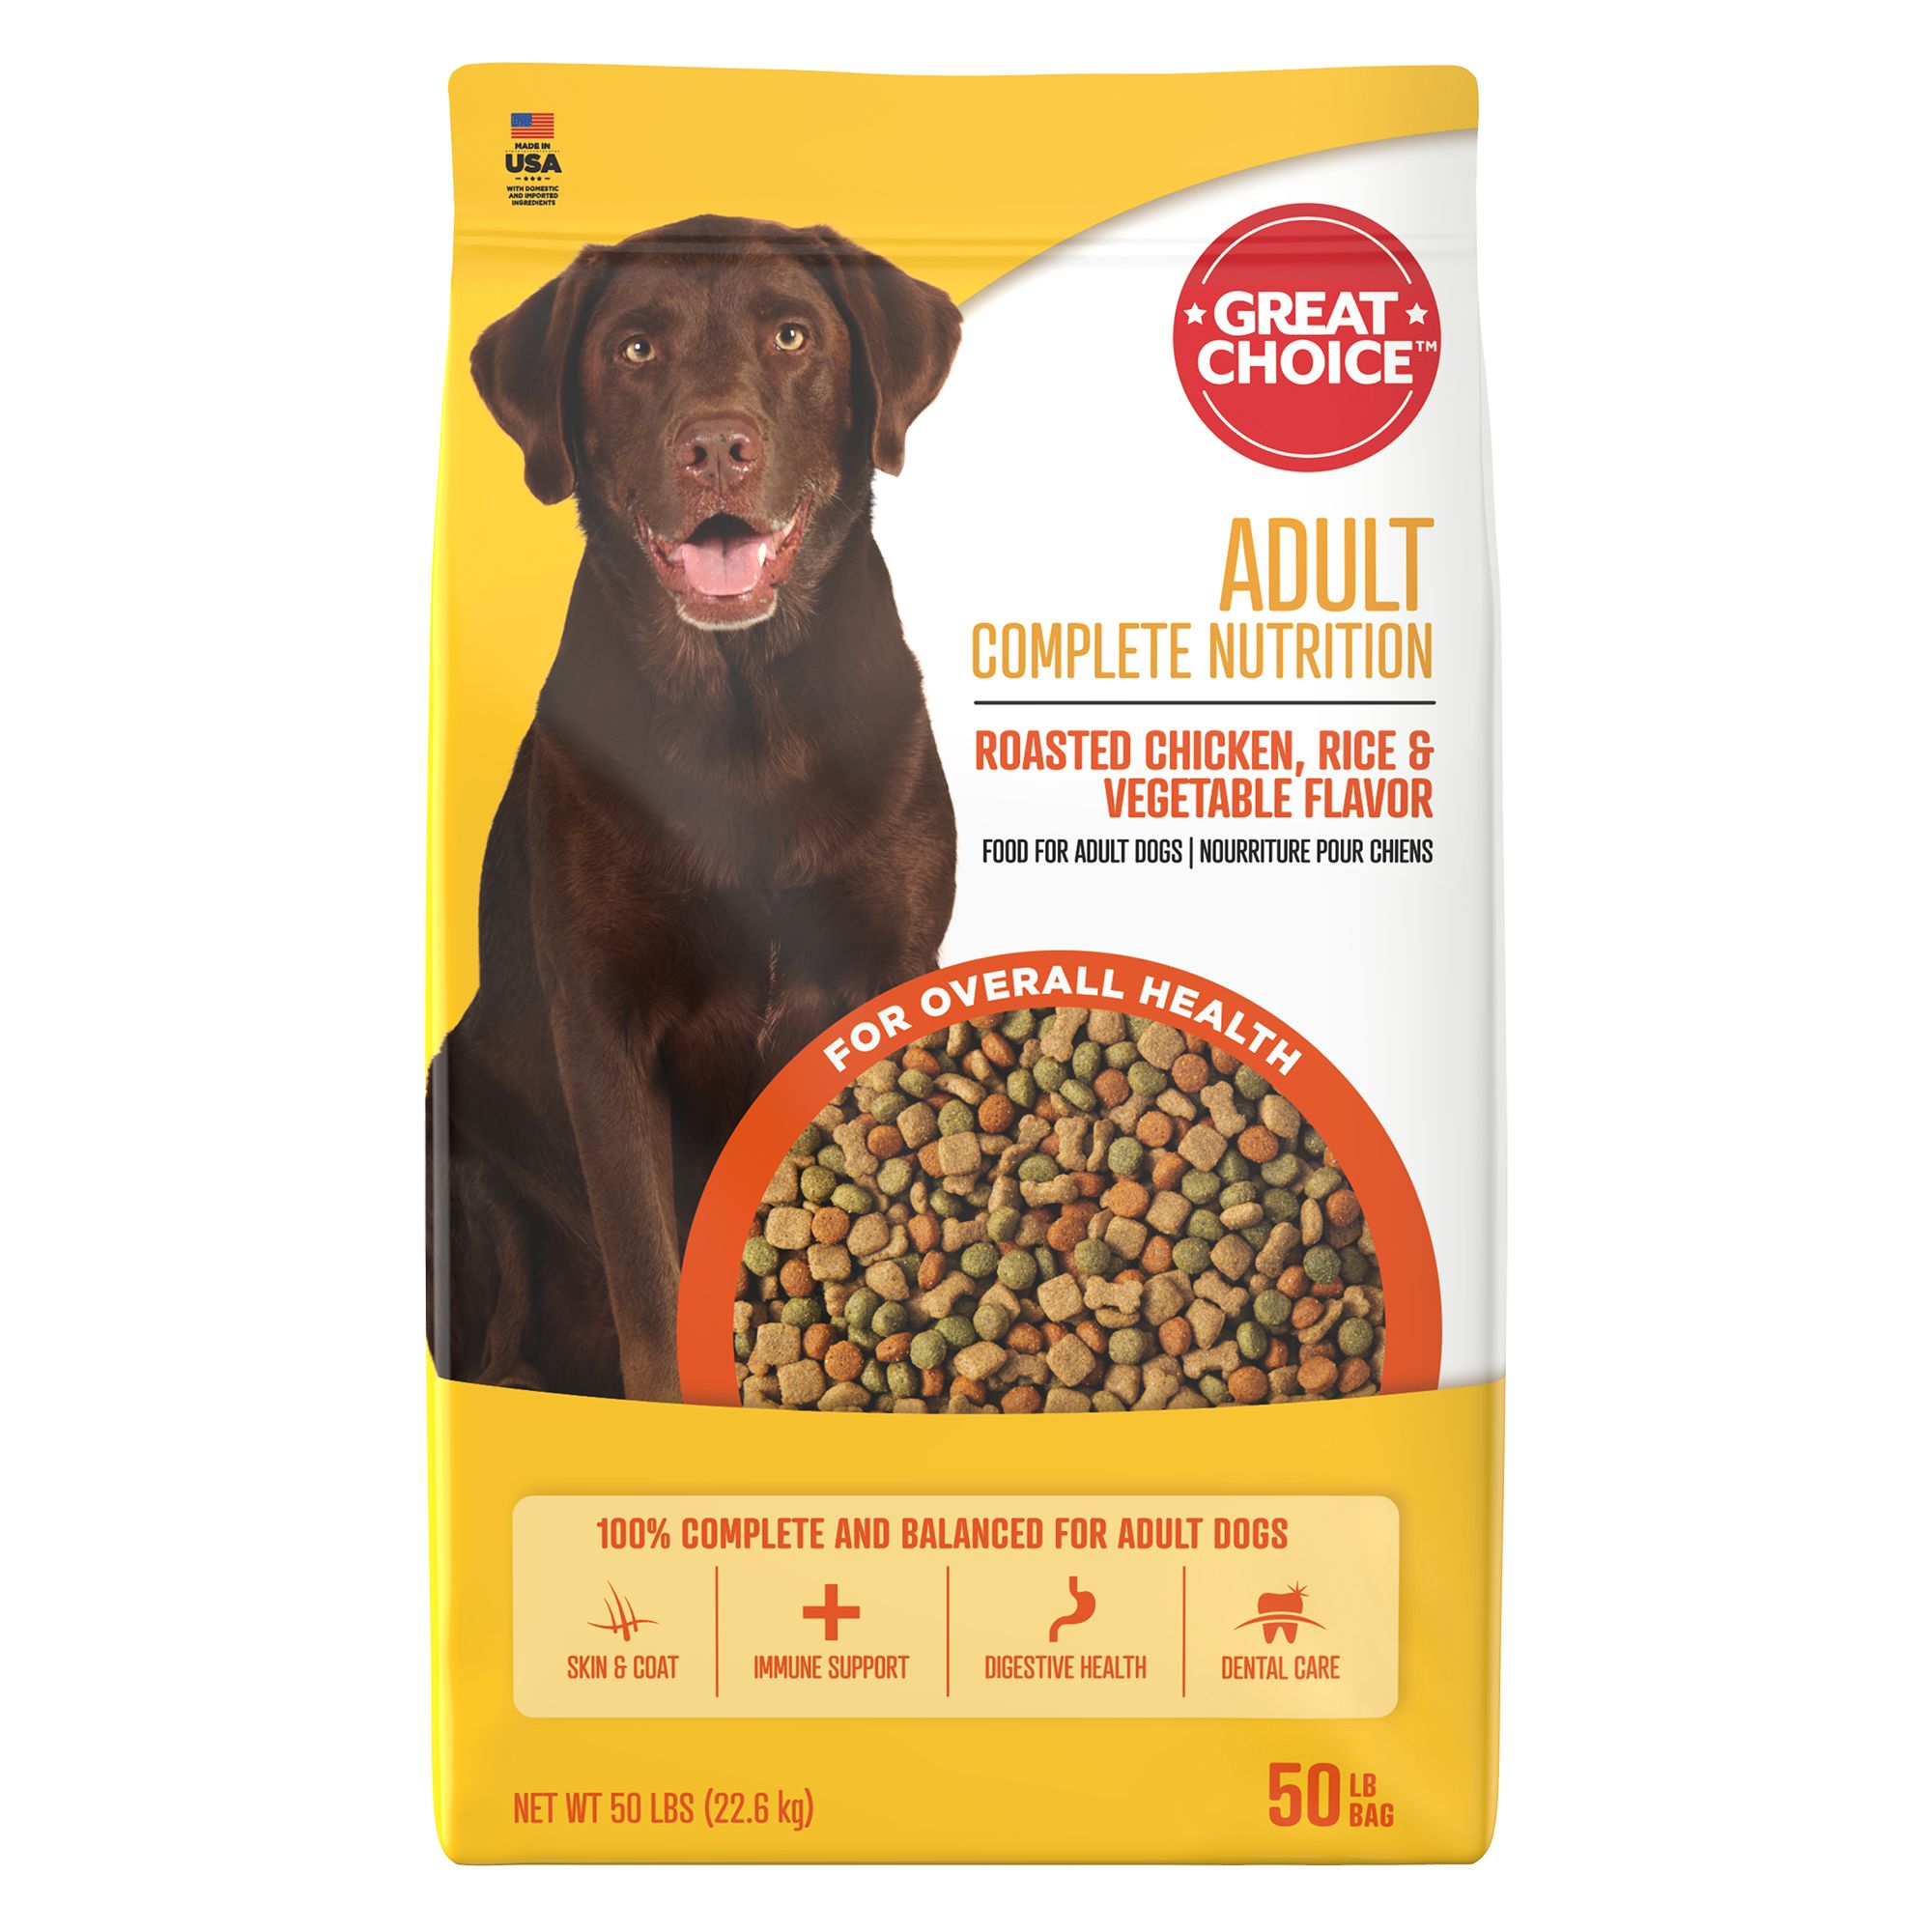 Complete Nutrition Adult Dog Food 